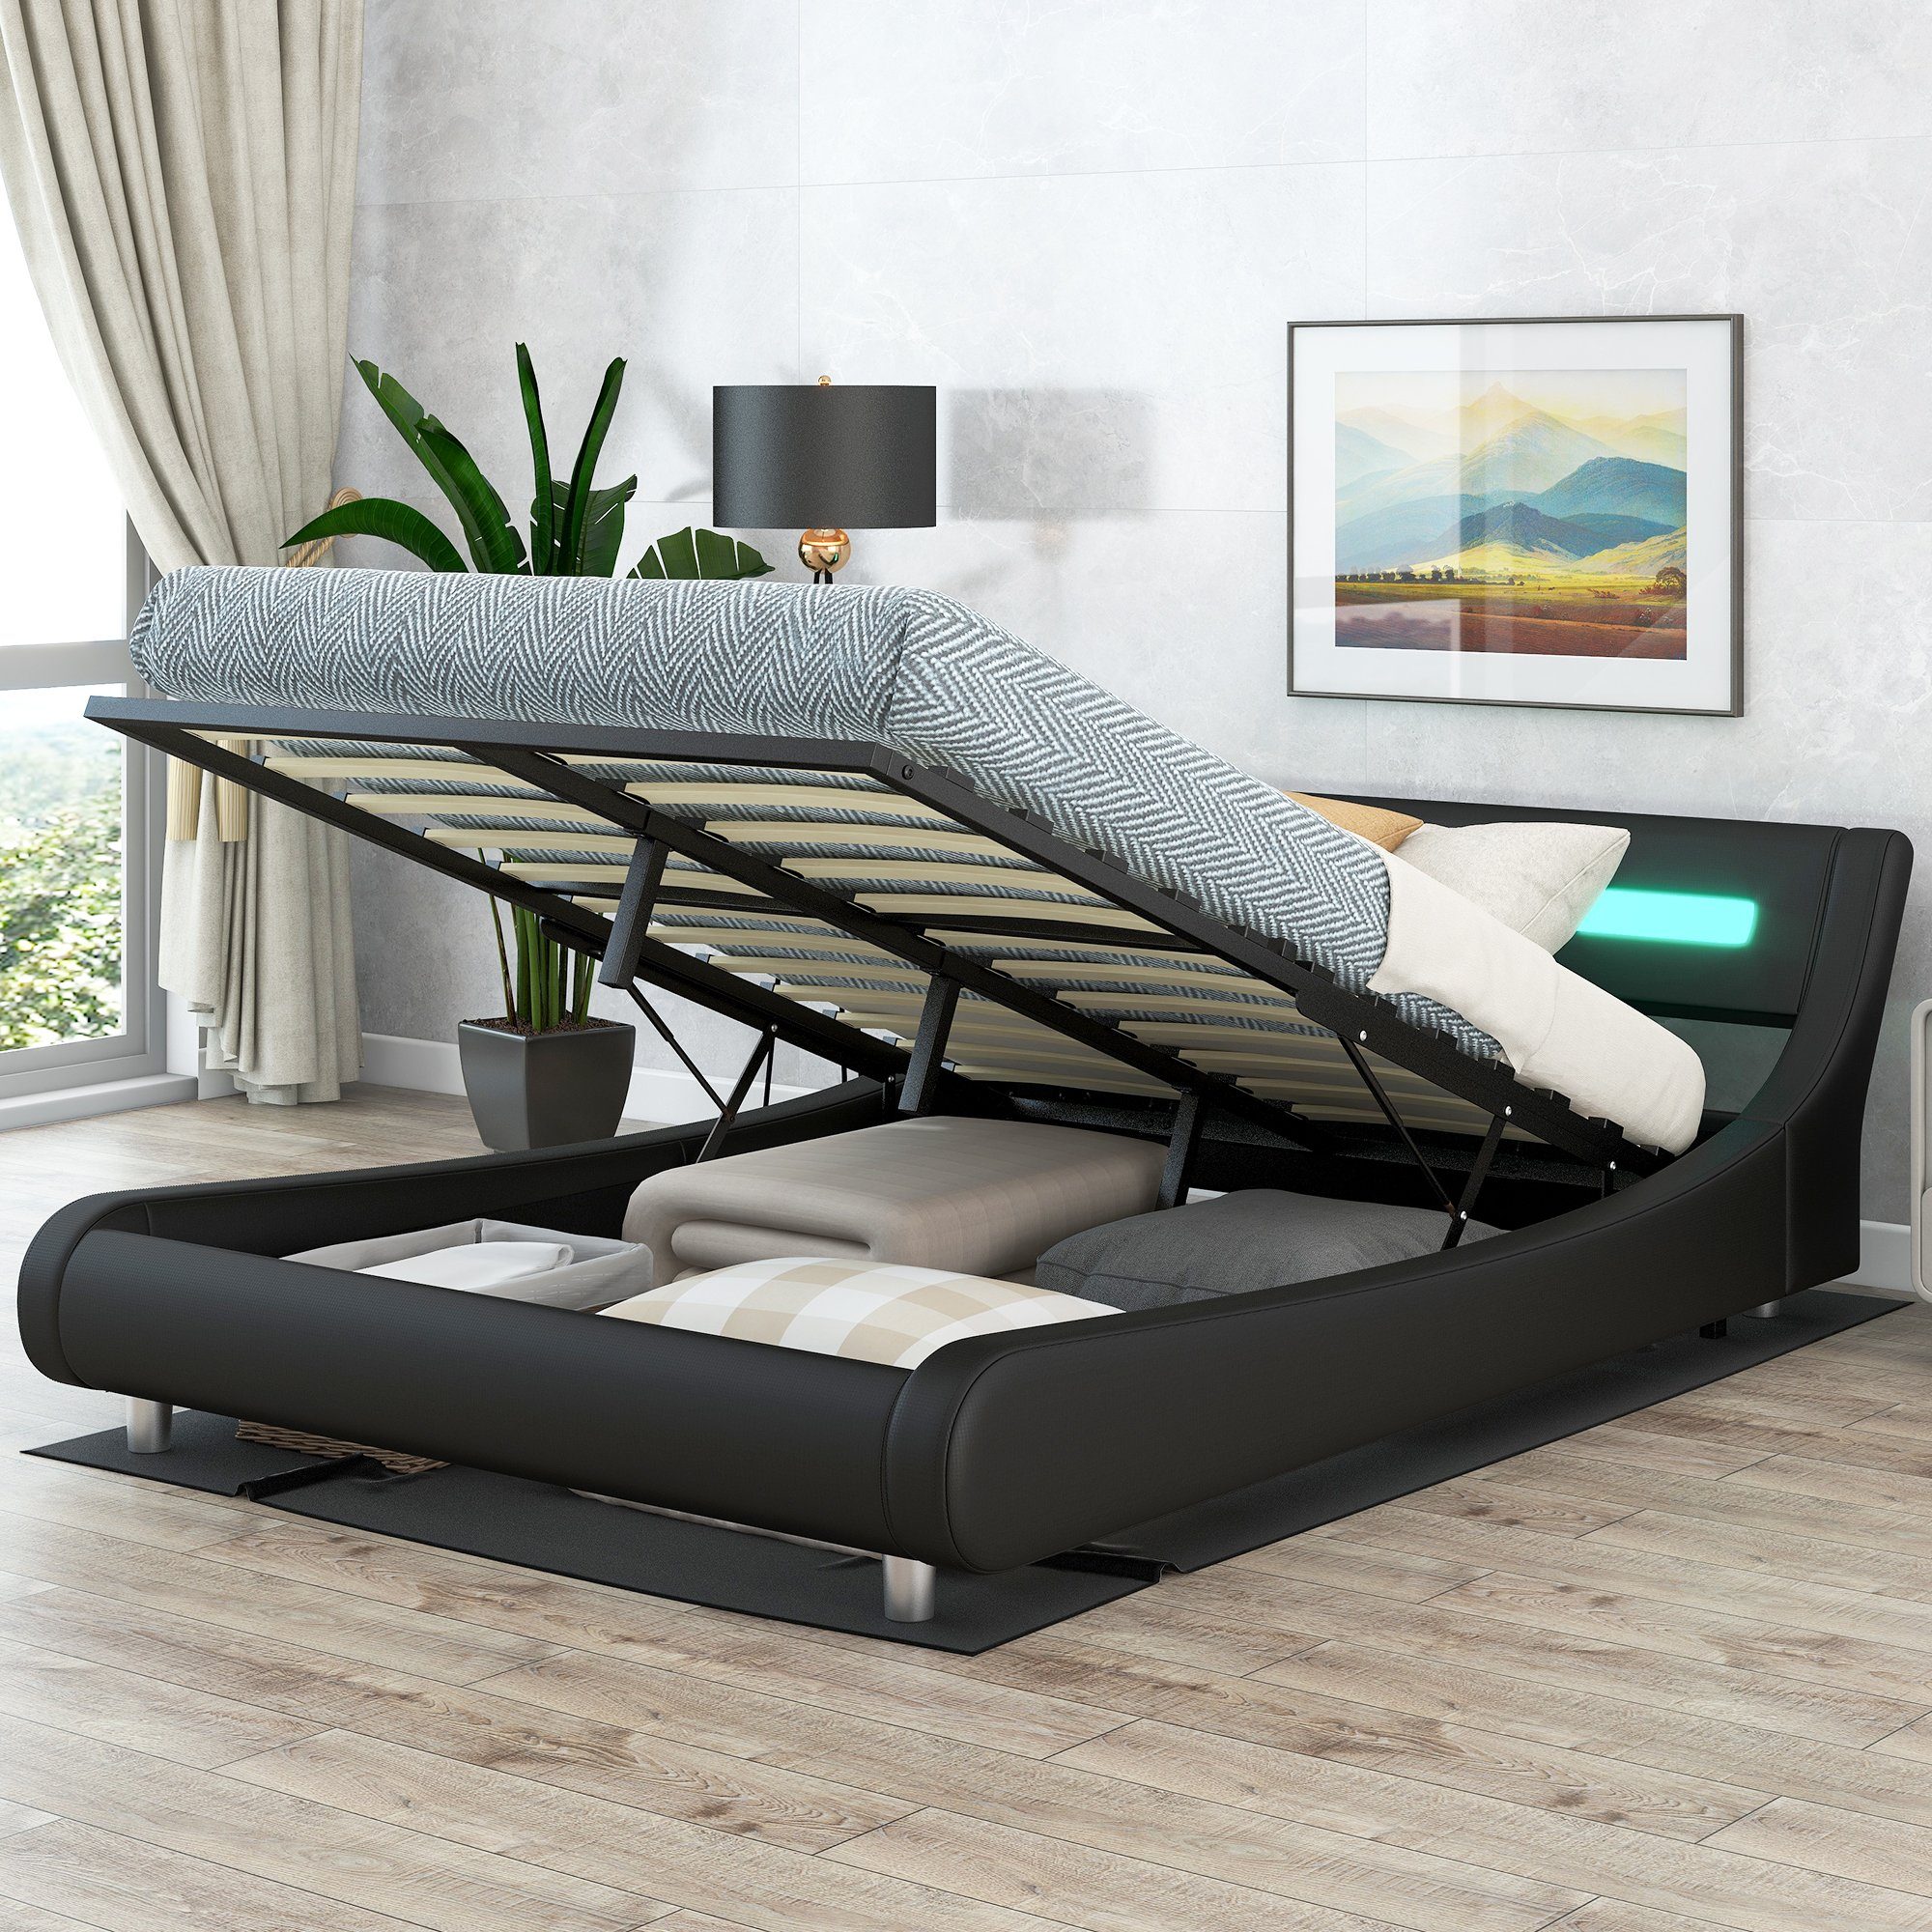 SOFTWEARY Polsterbett Doppelbett mit Lattenrost und Bettkasten